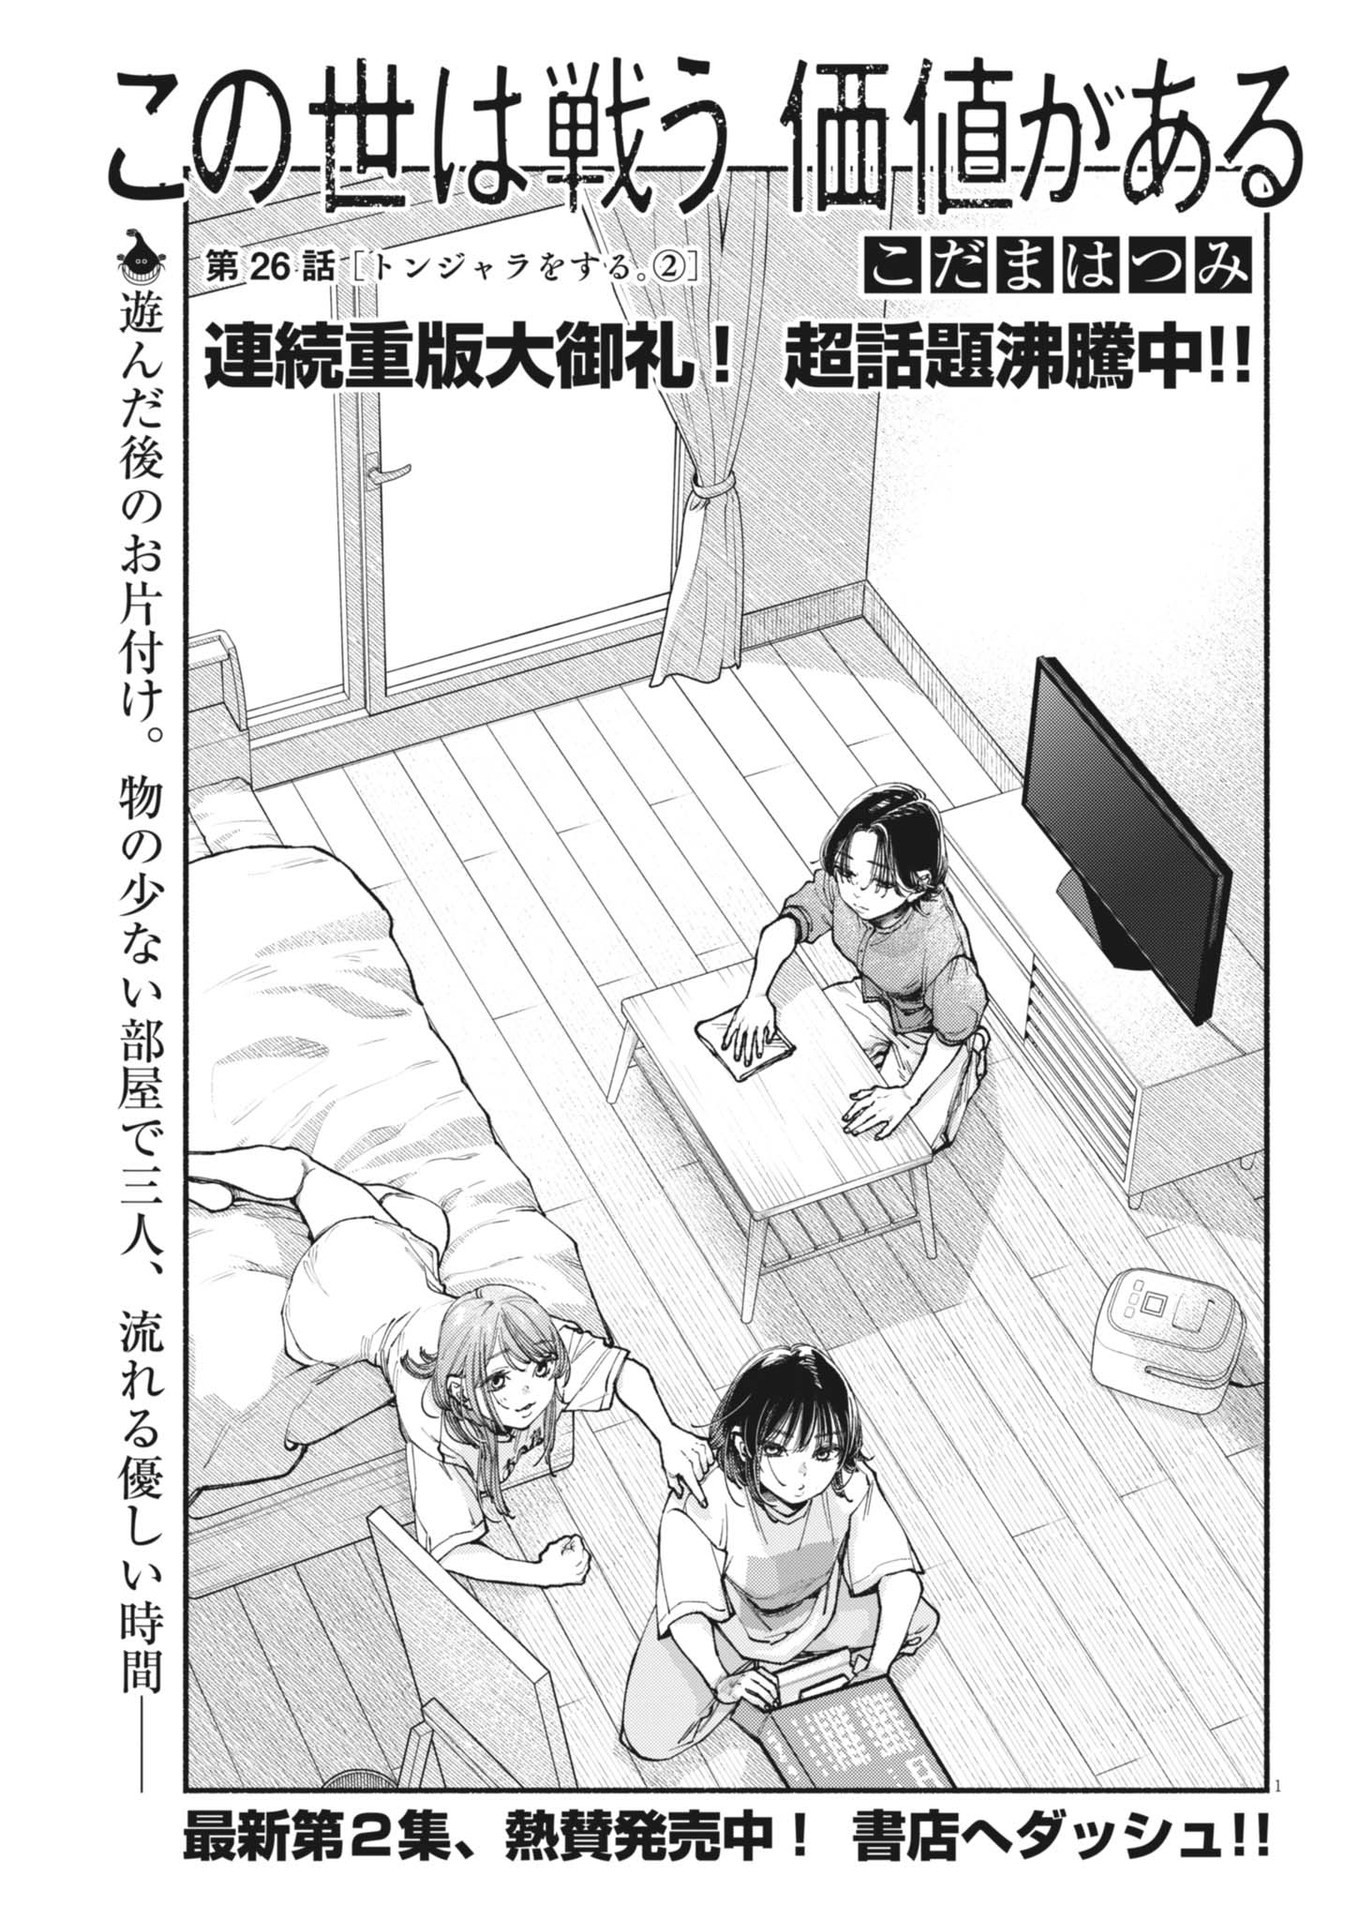 Konoyo wa Tatakau Kachi ga Aru  - Chapter 26 - Page 1